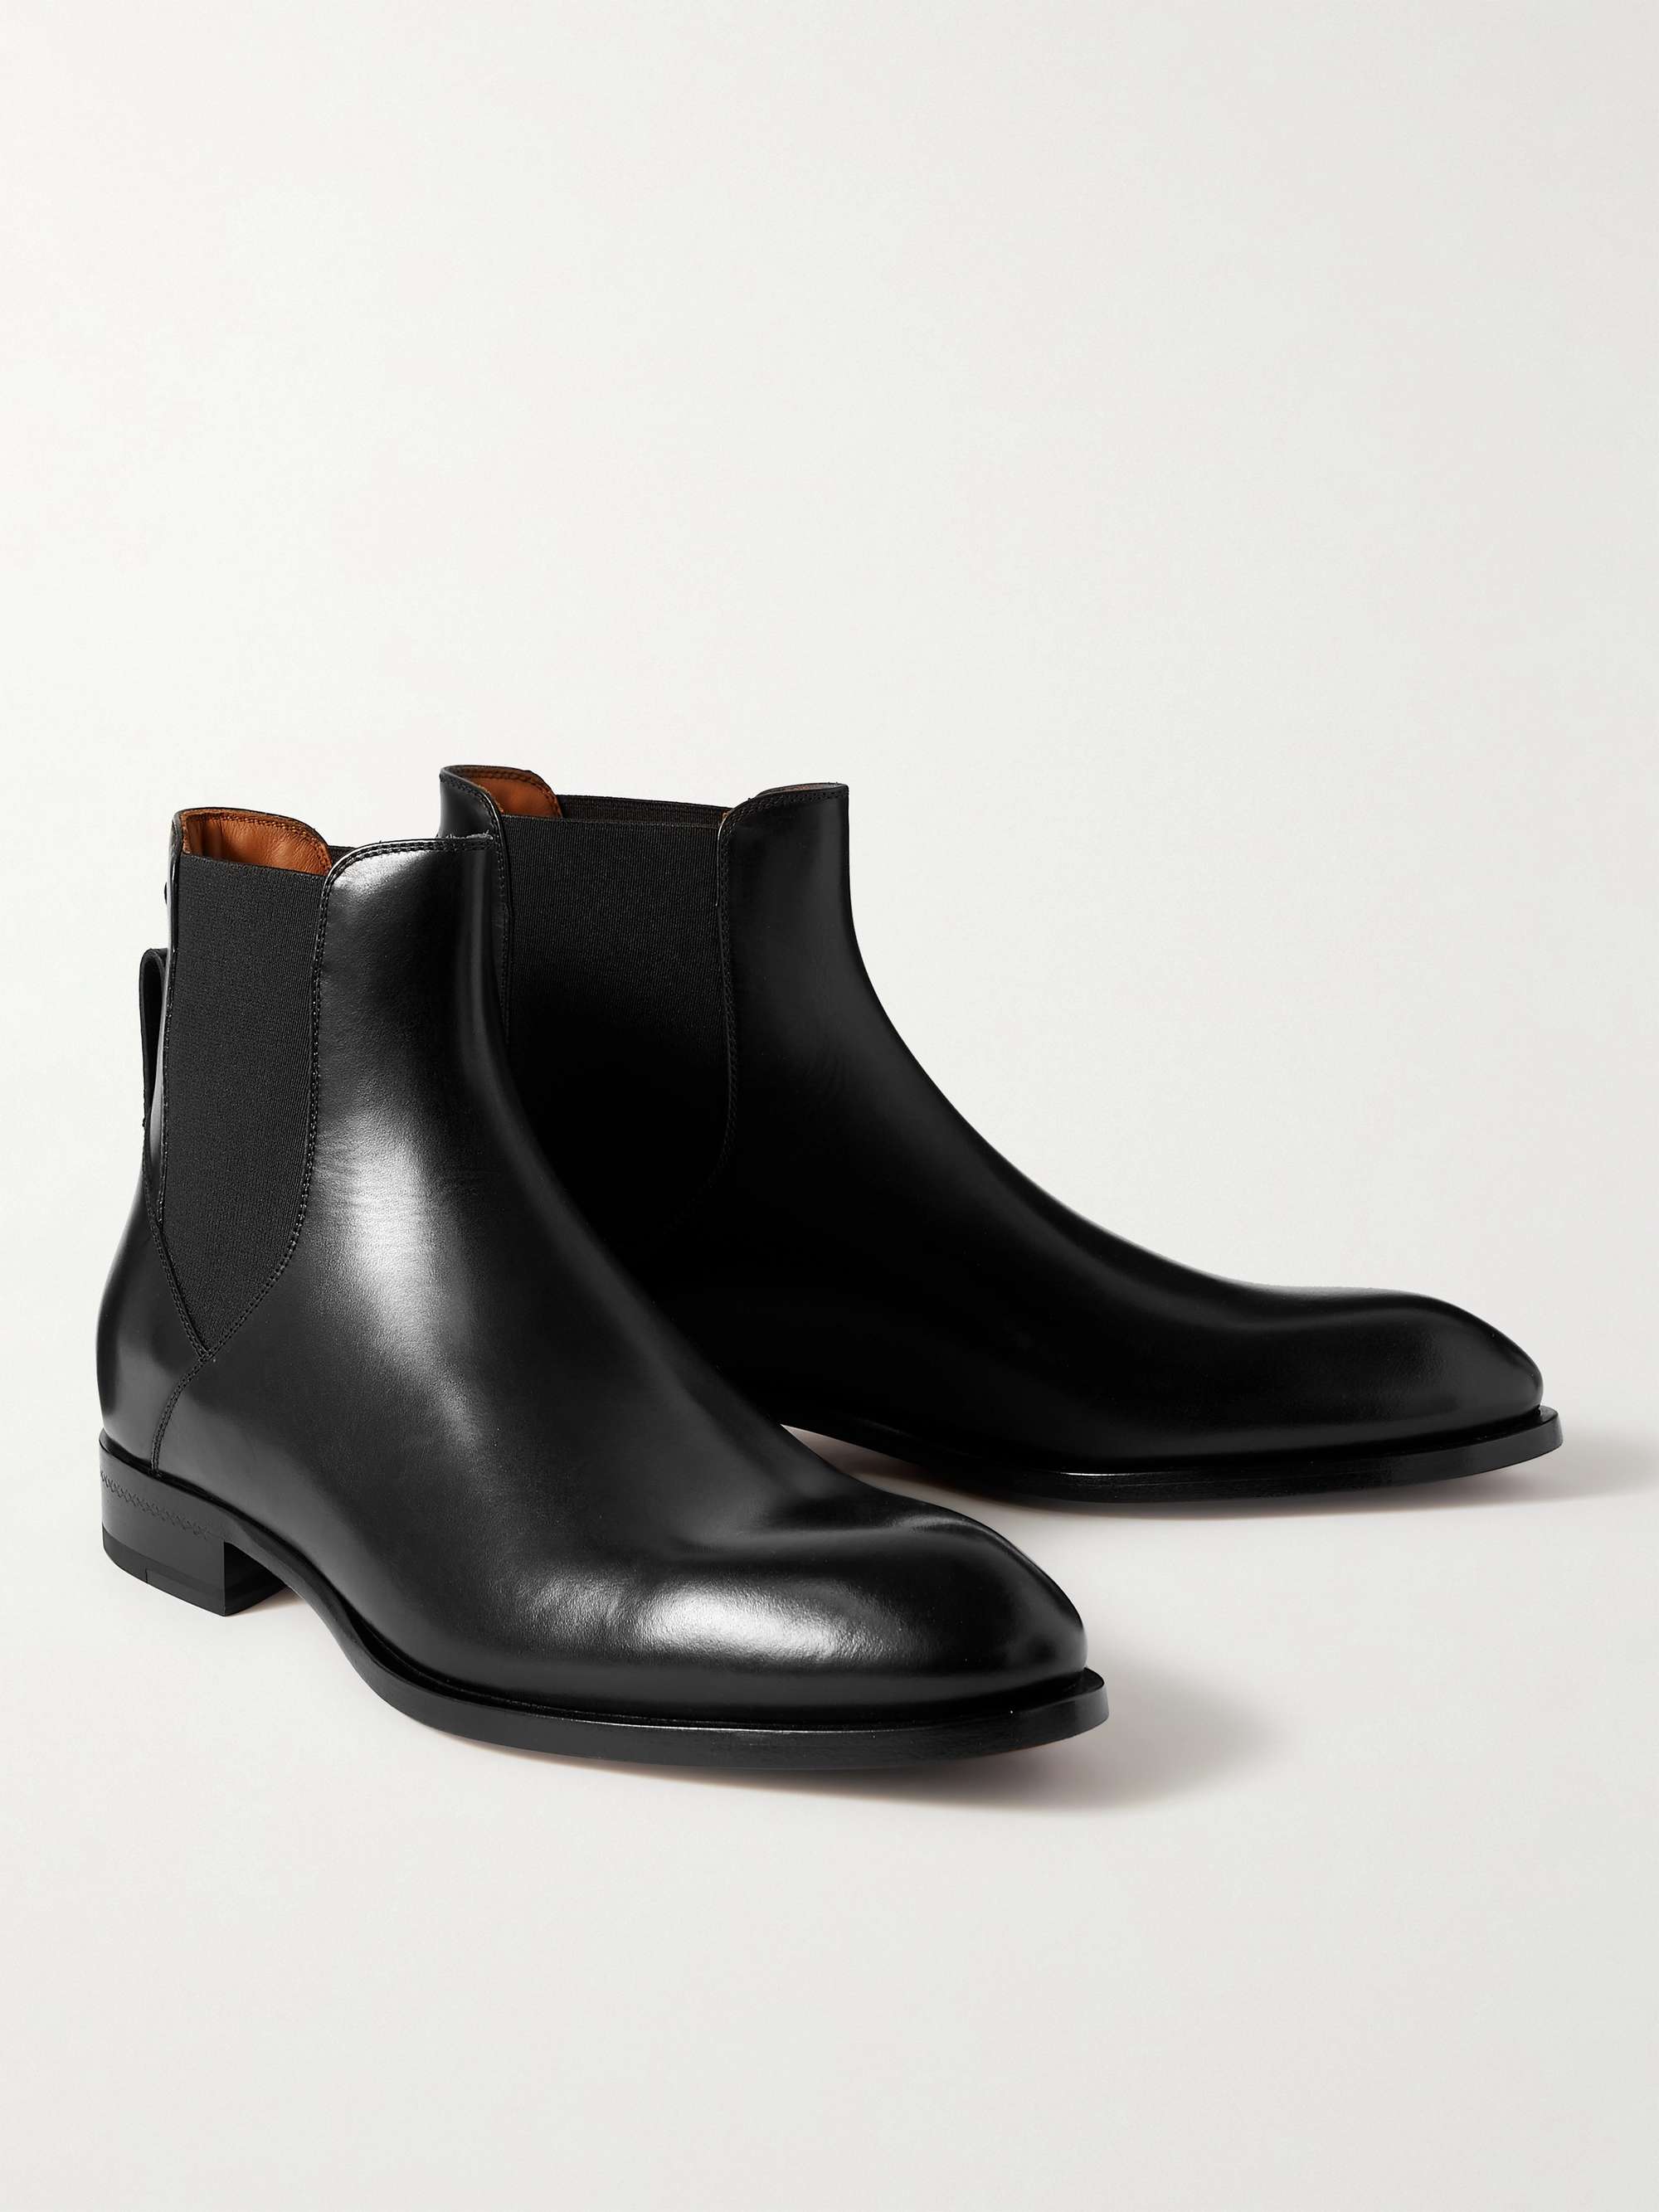 ERMENEGILDO ZEGNA Leather Chelsea Boots